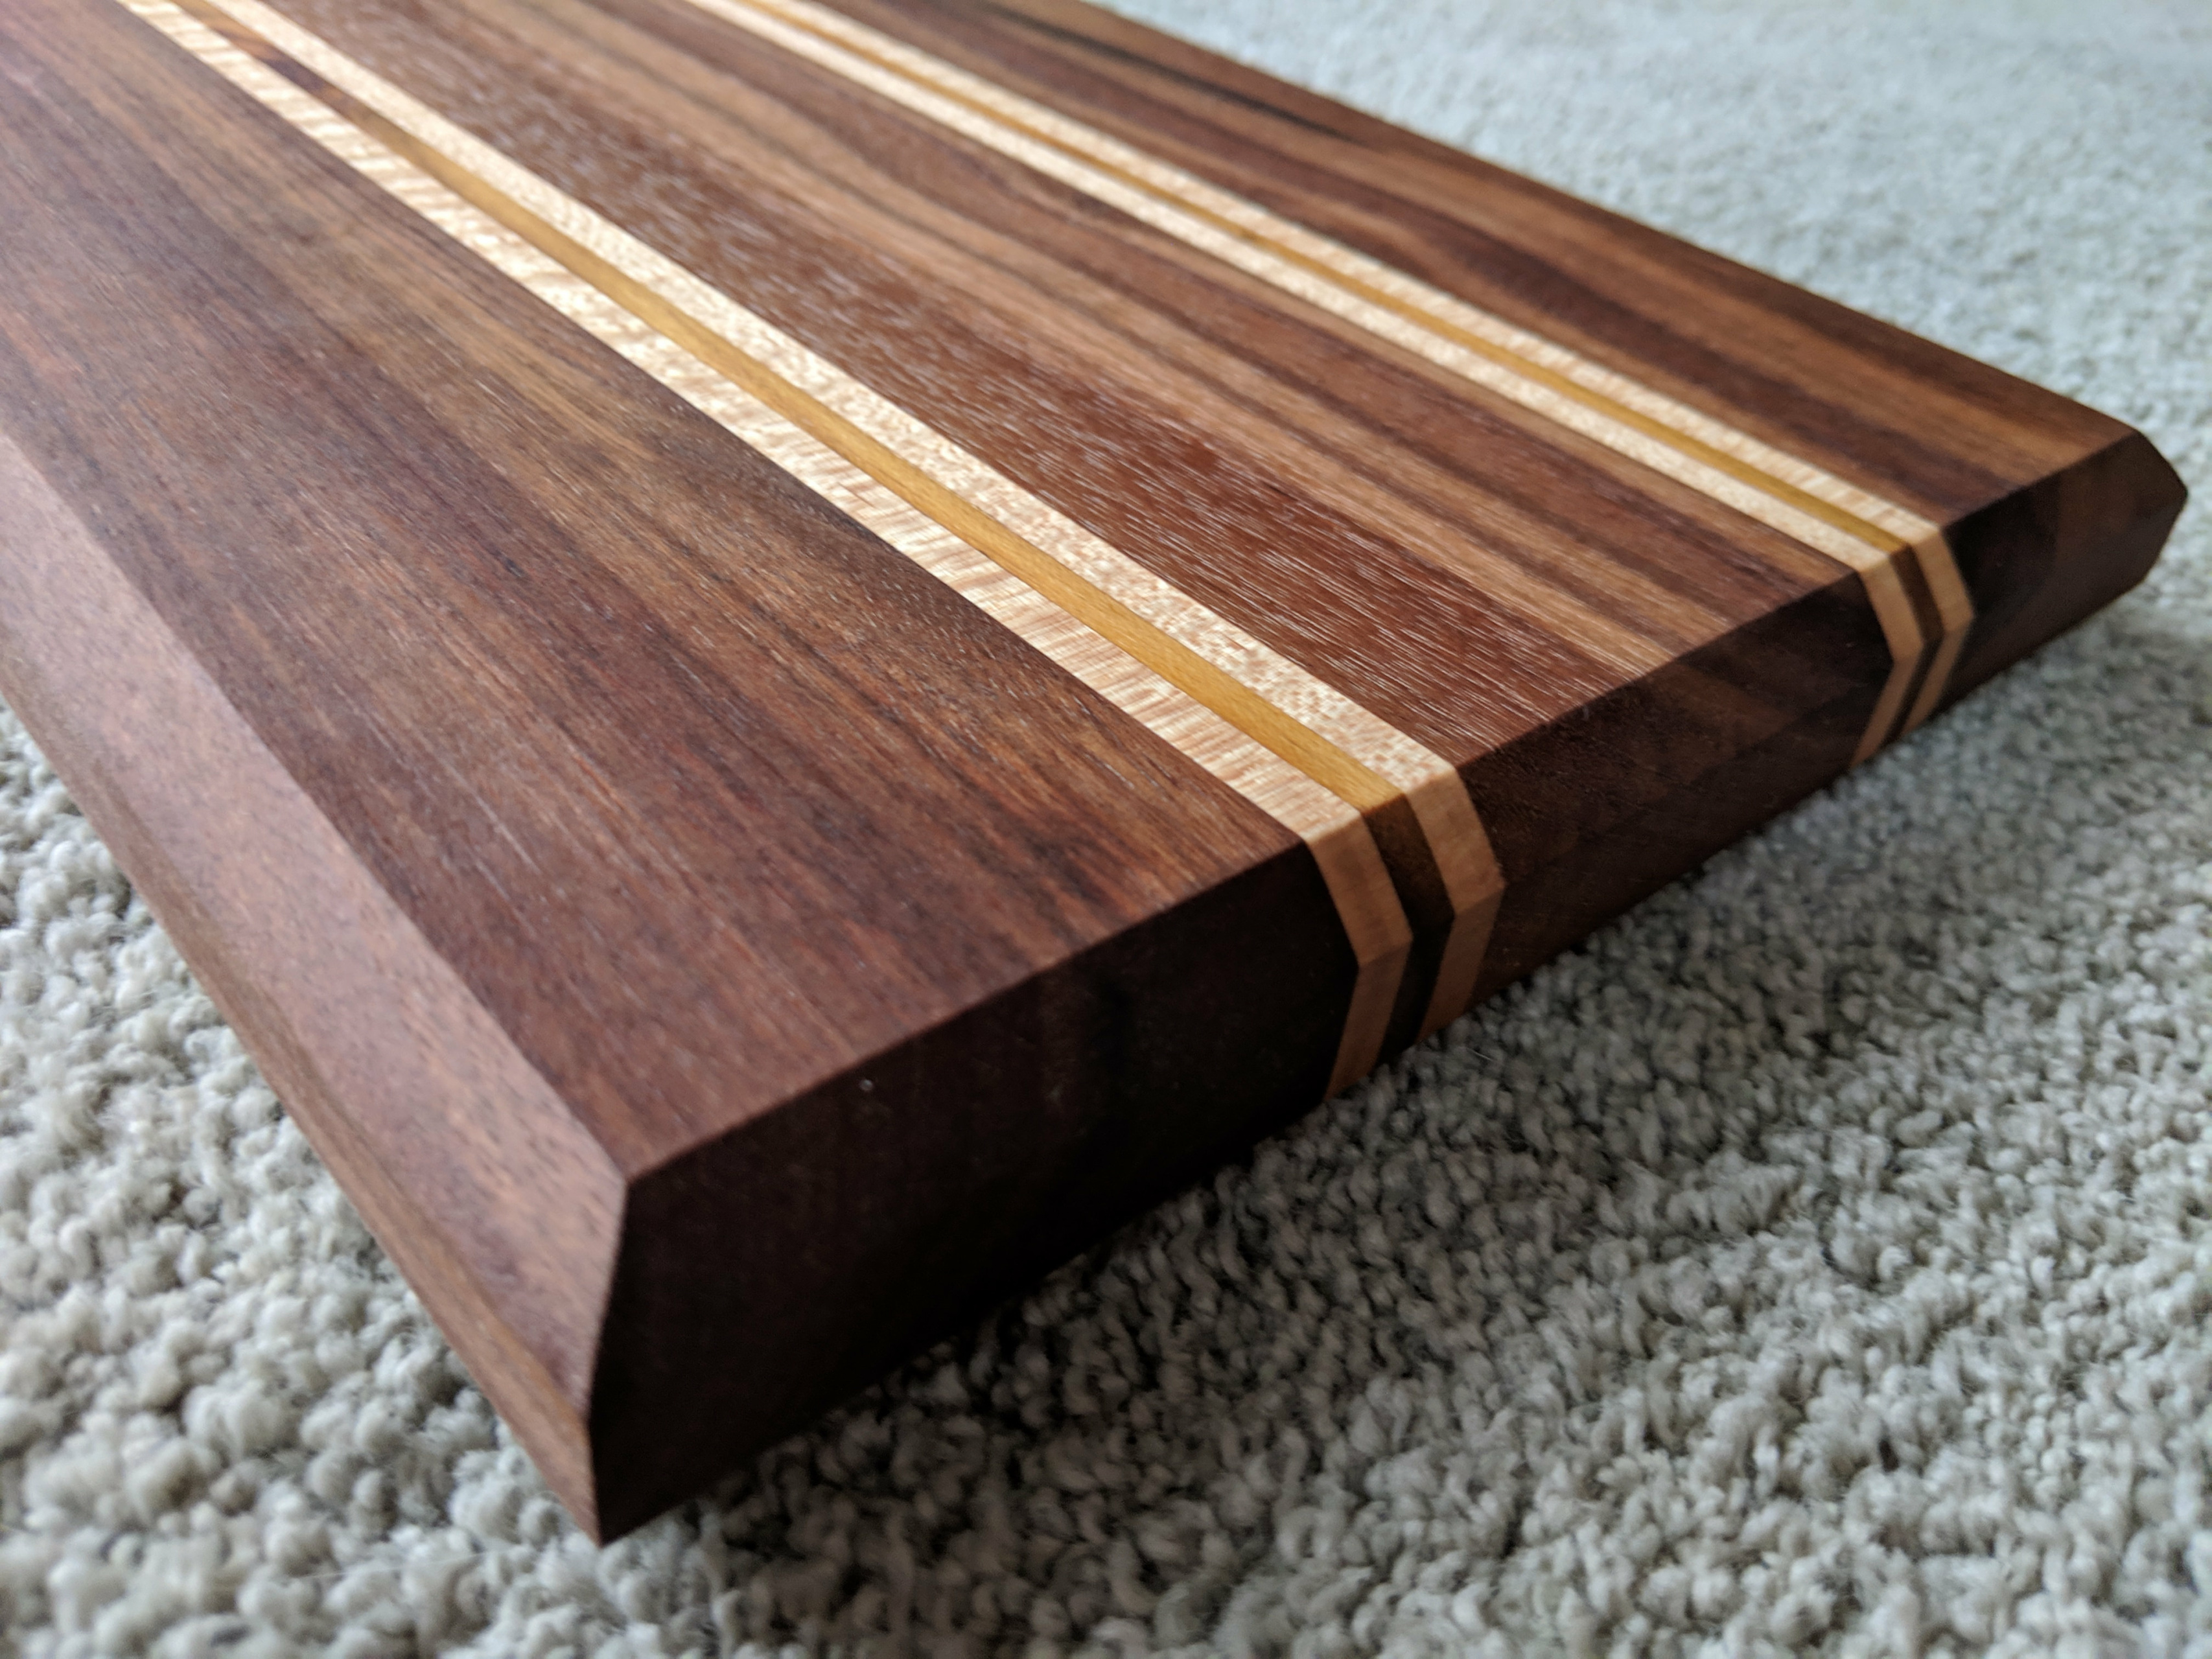 Medium Cutting Board - Walnut, Maple, Teak